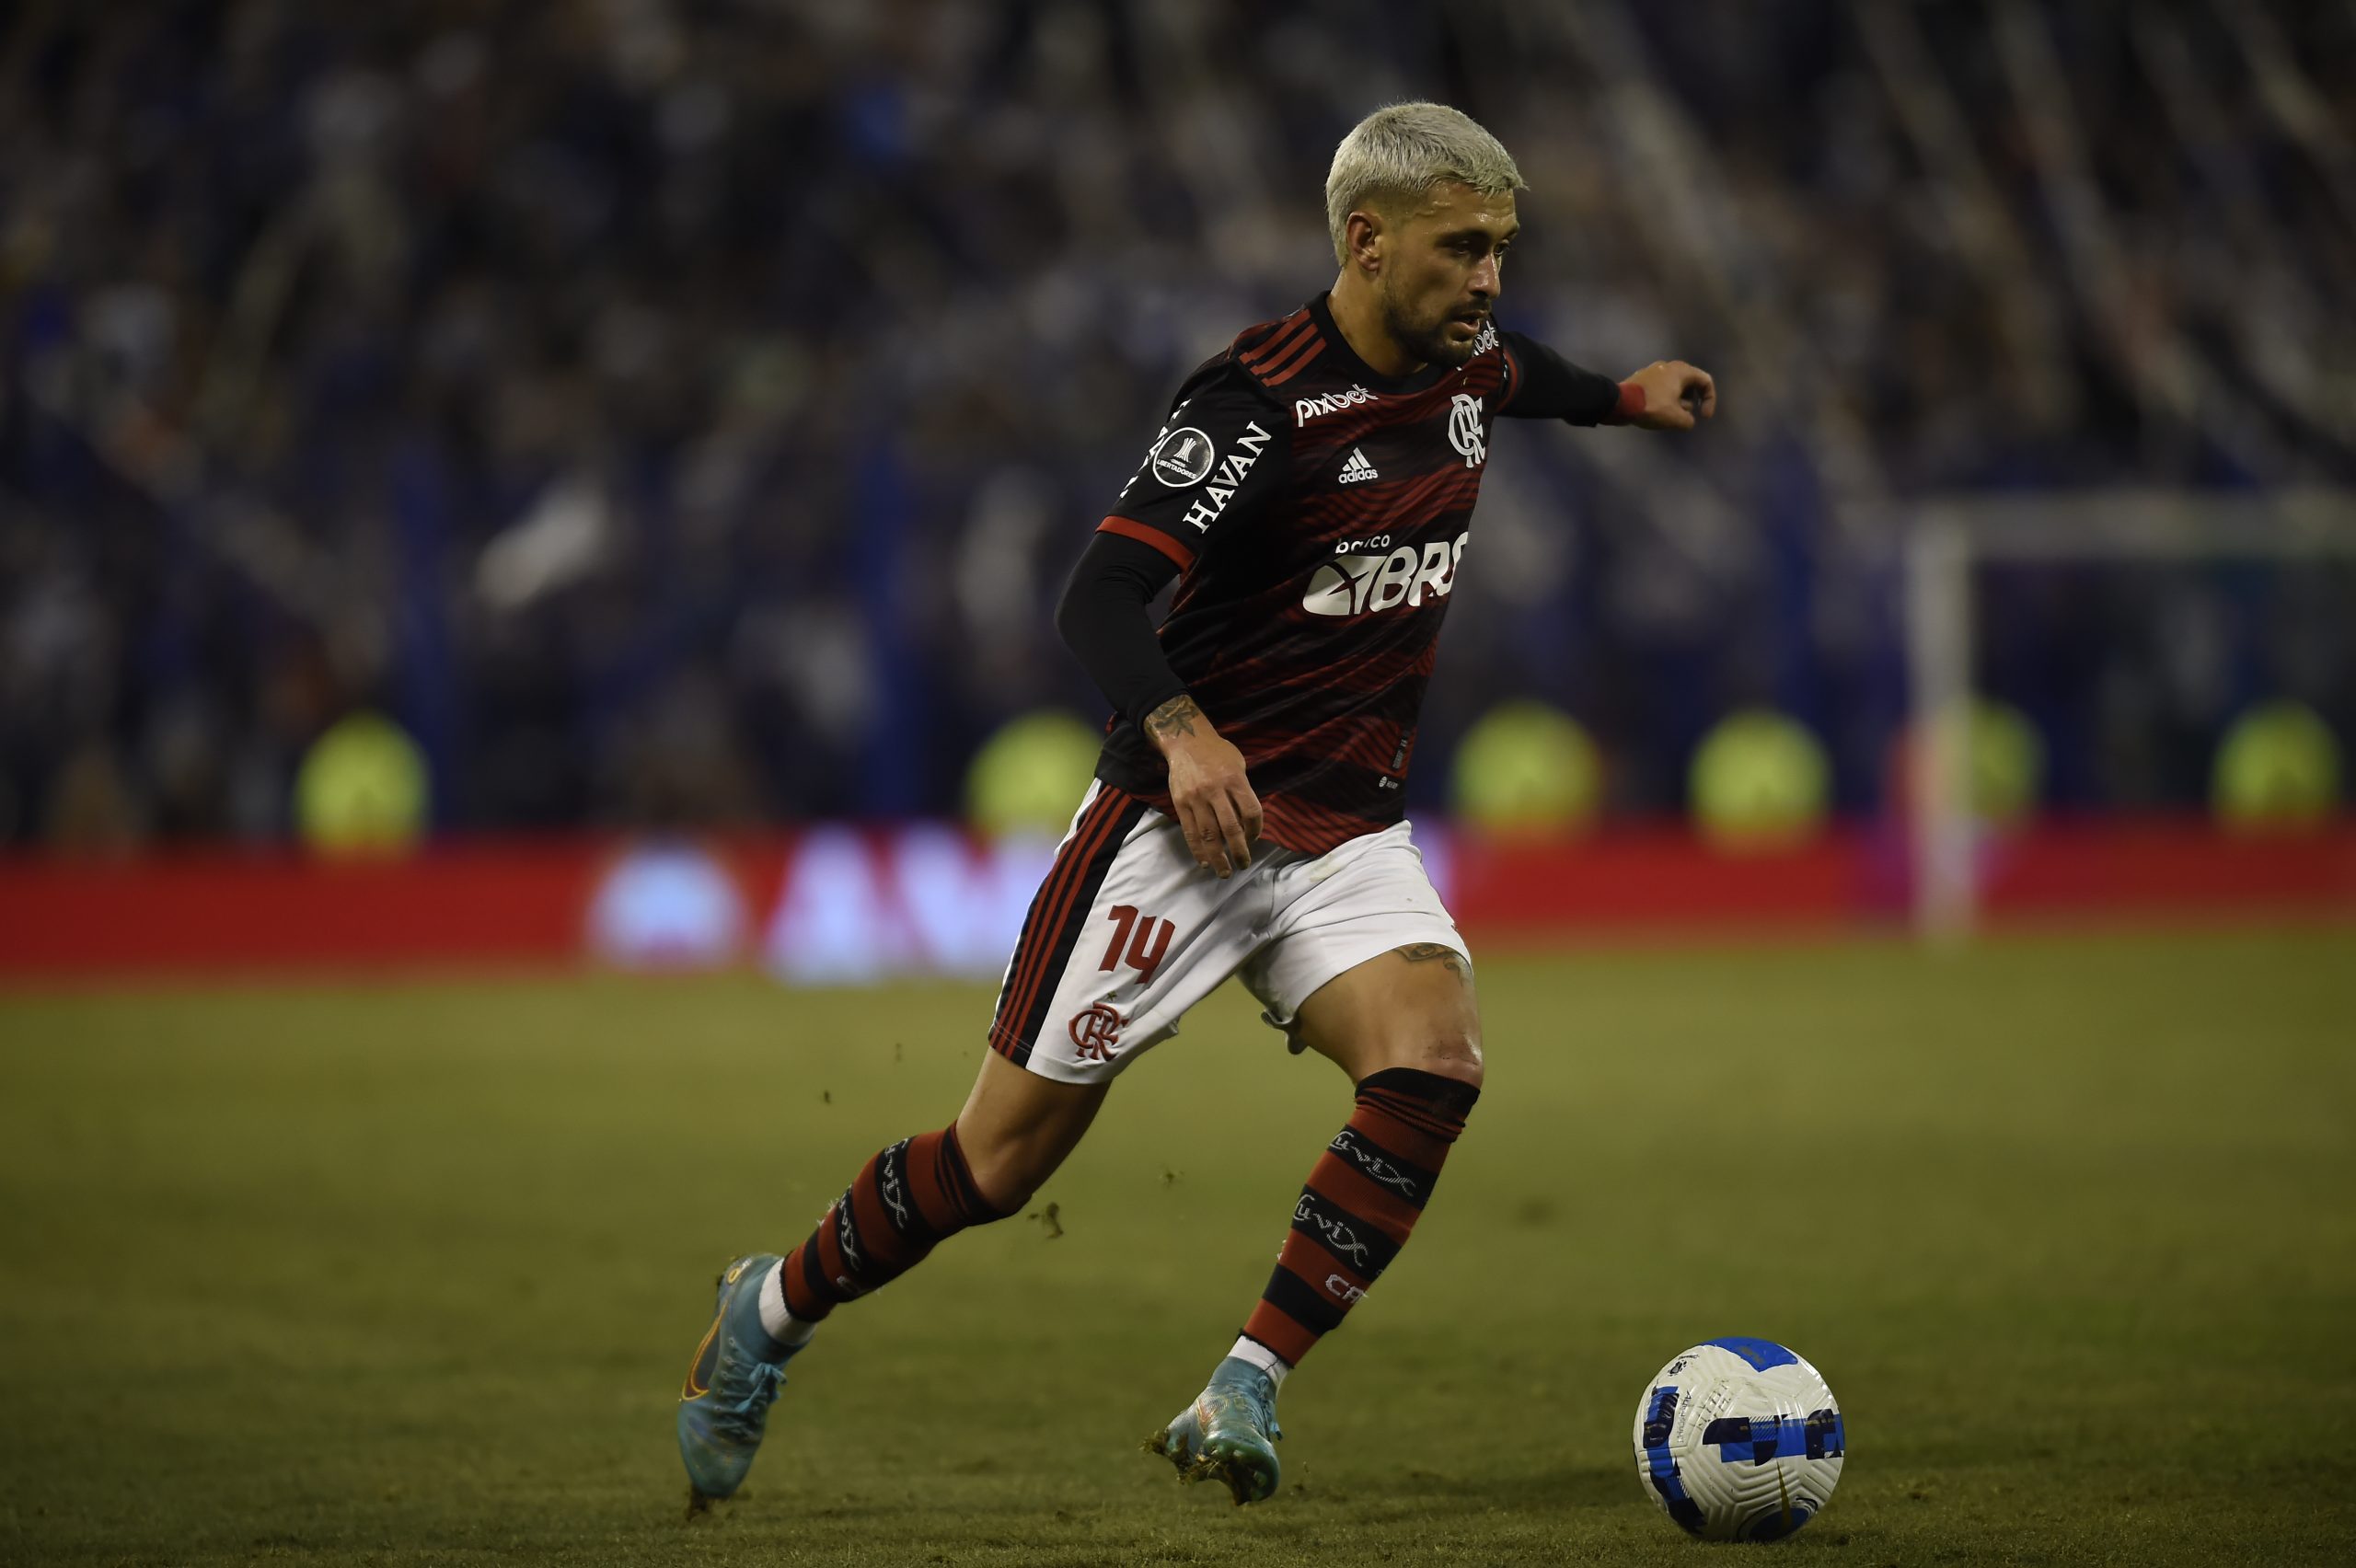 Após deixar o jogo com o Vélez por dores, Arrascaeta será avaliado pelo Flamengo nesta sexta